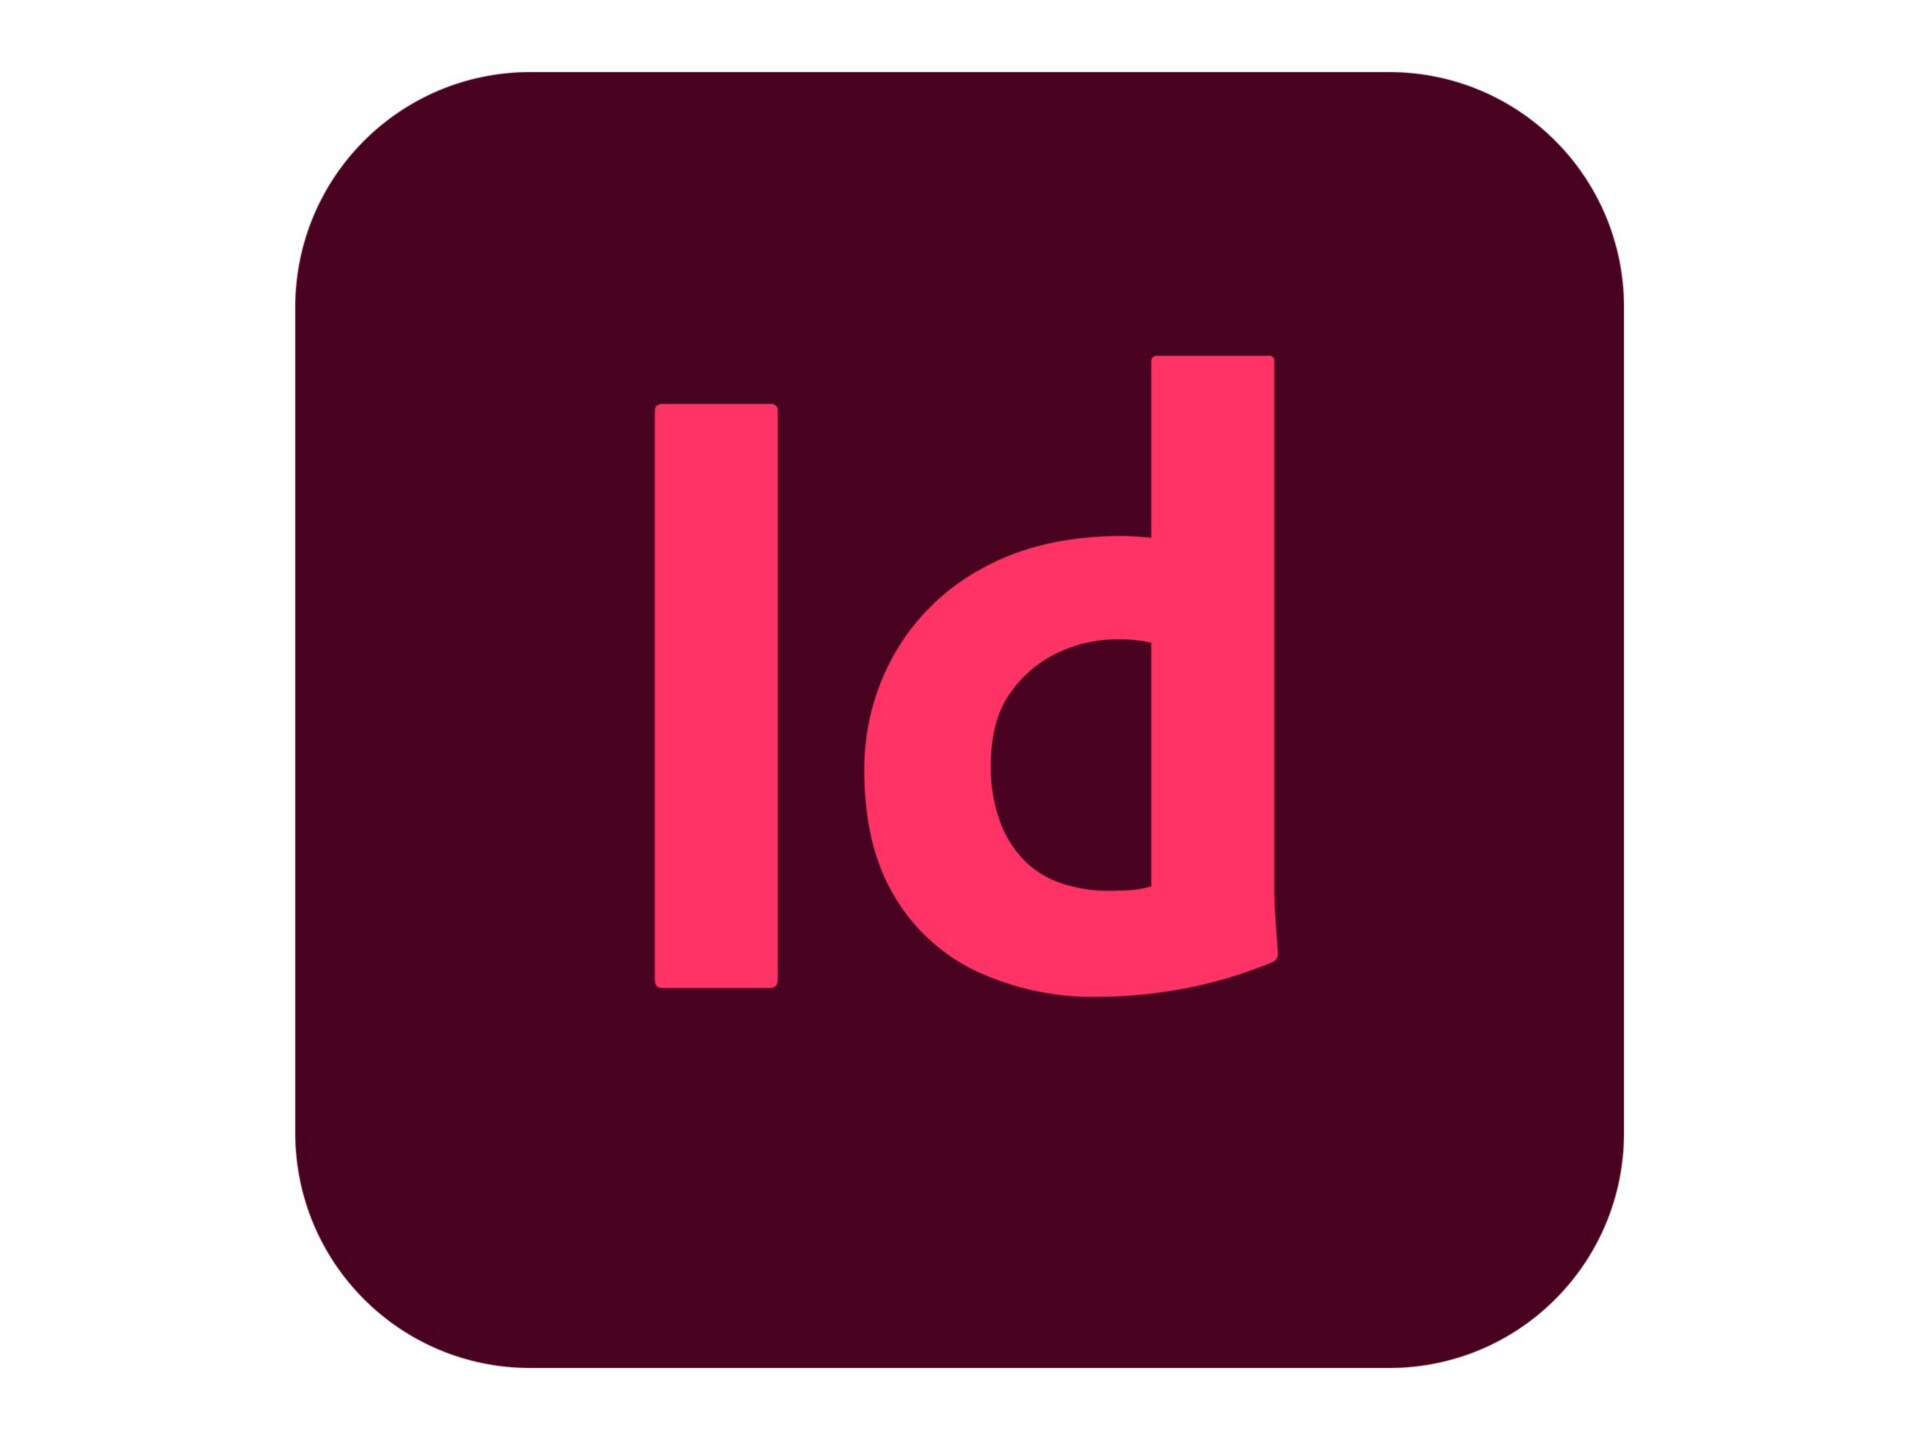 Adobe InDesign CC for Enterprise - Subscription New (29 months) - 1 named u